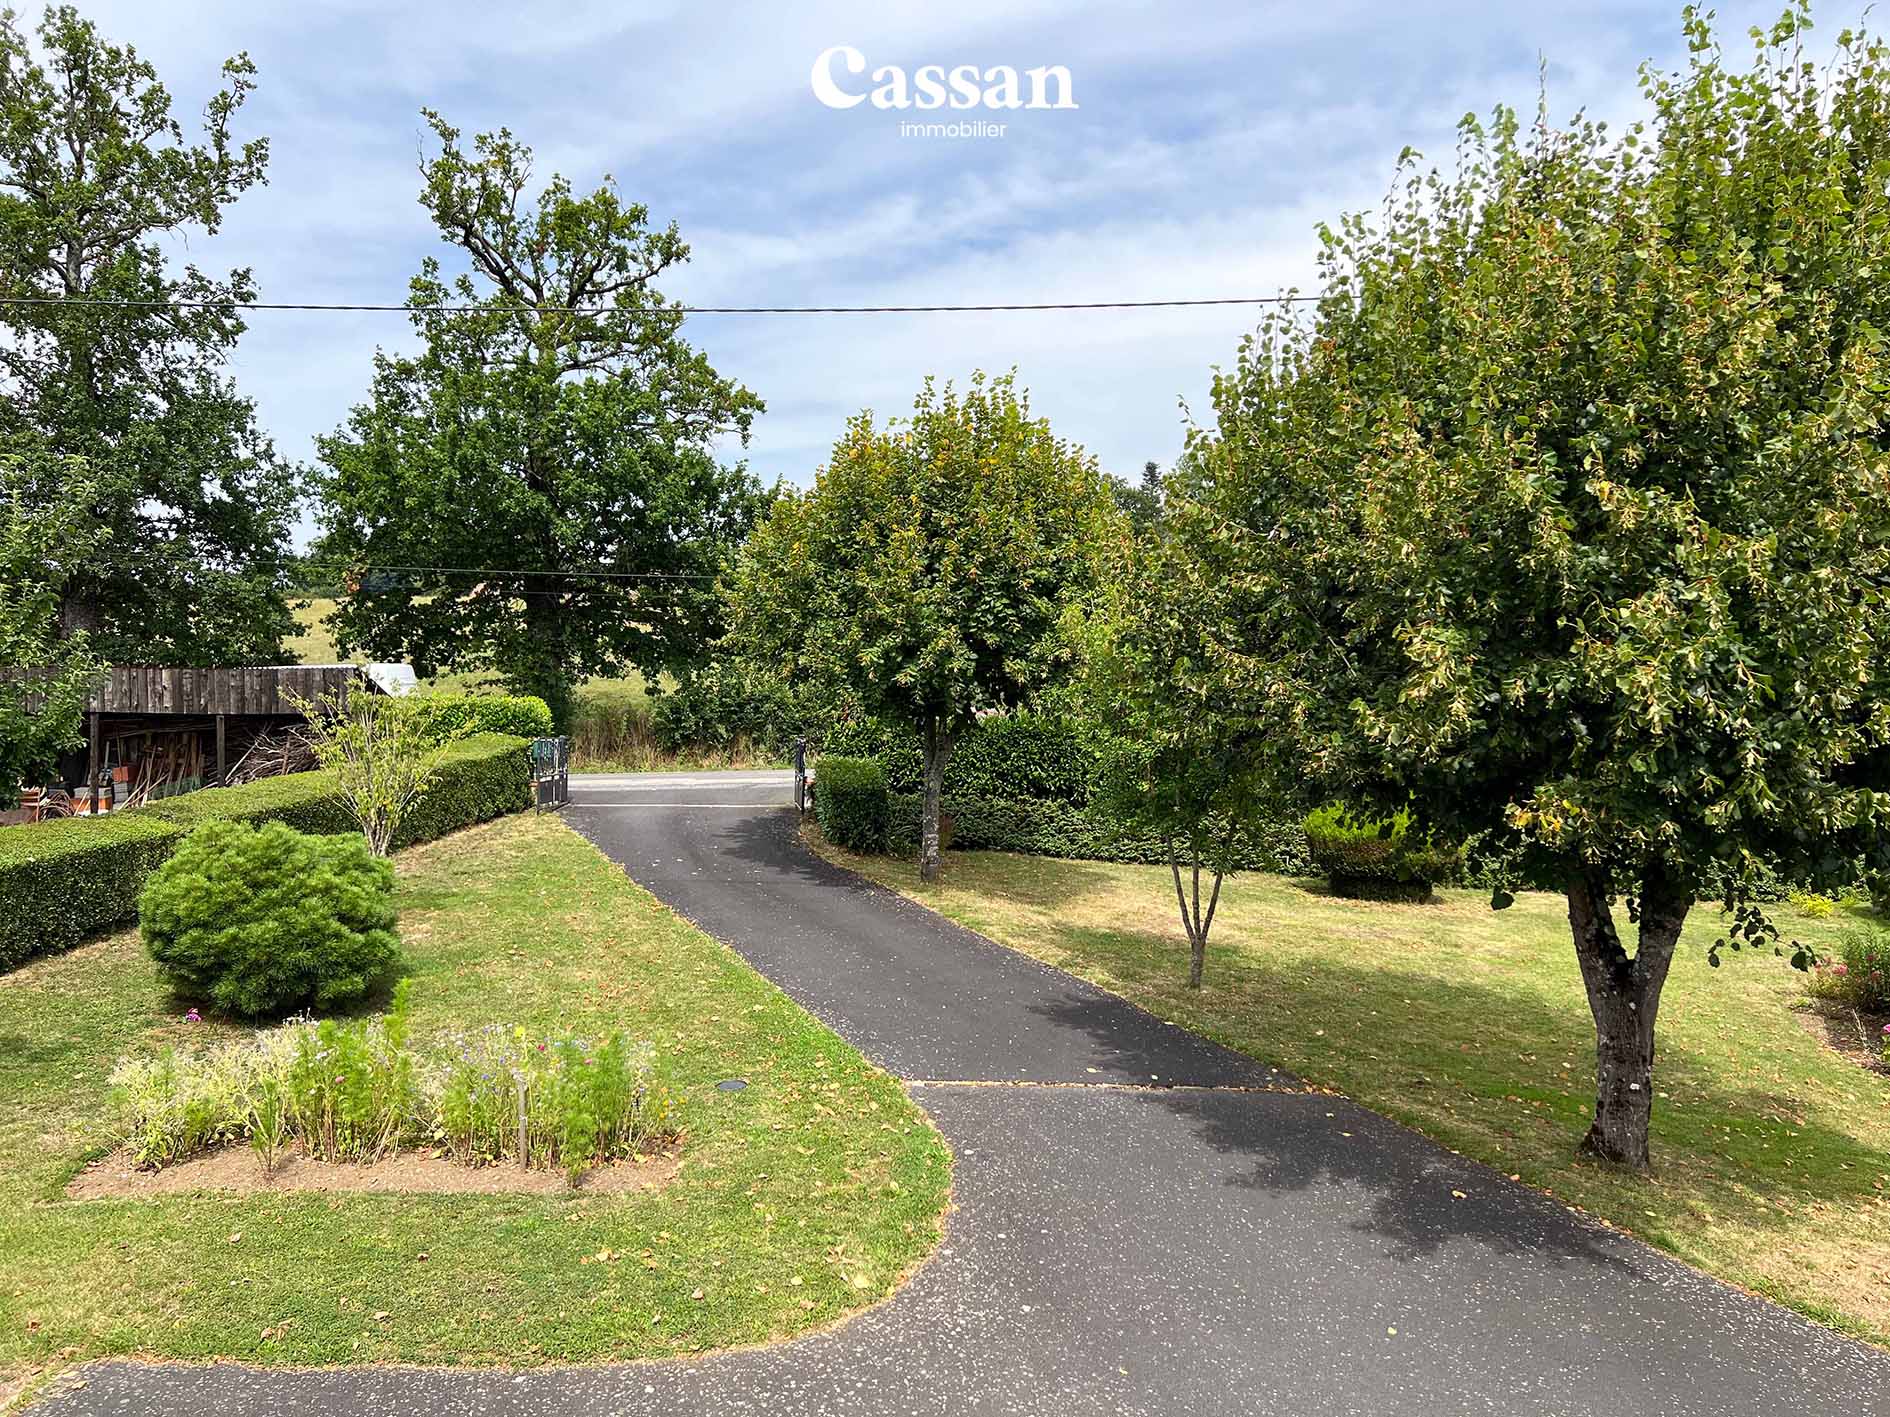 Terrain maison à vendre Sansac-de-Marmiesse Cassan immobilier